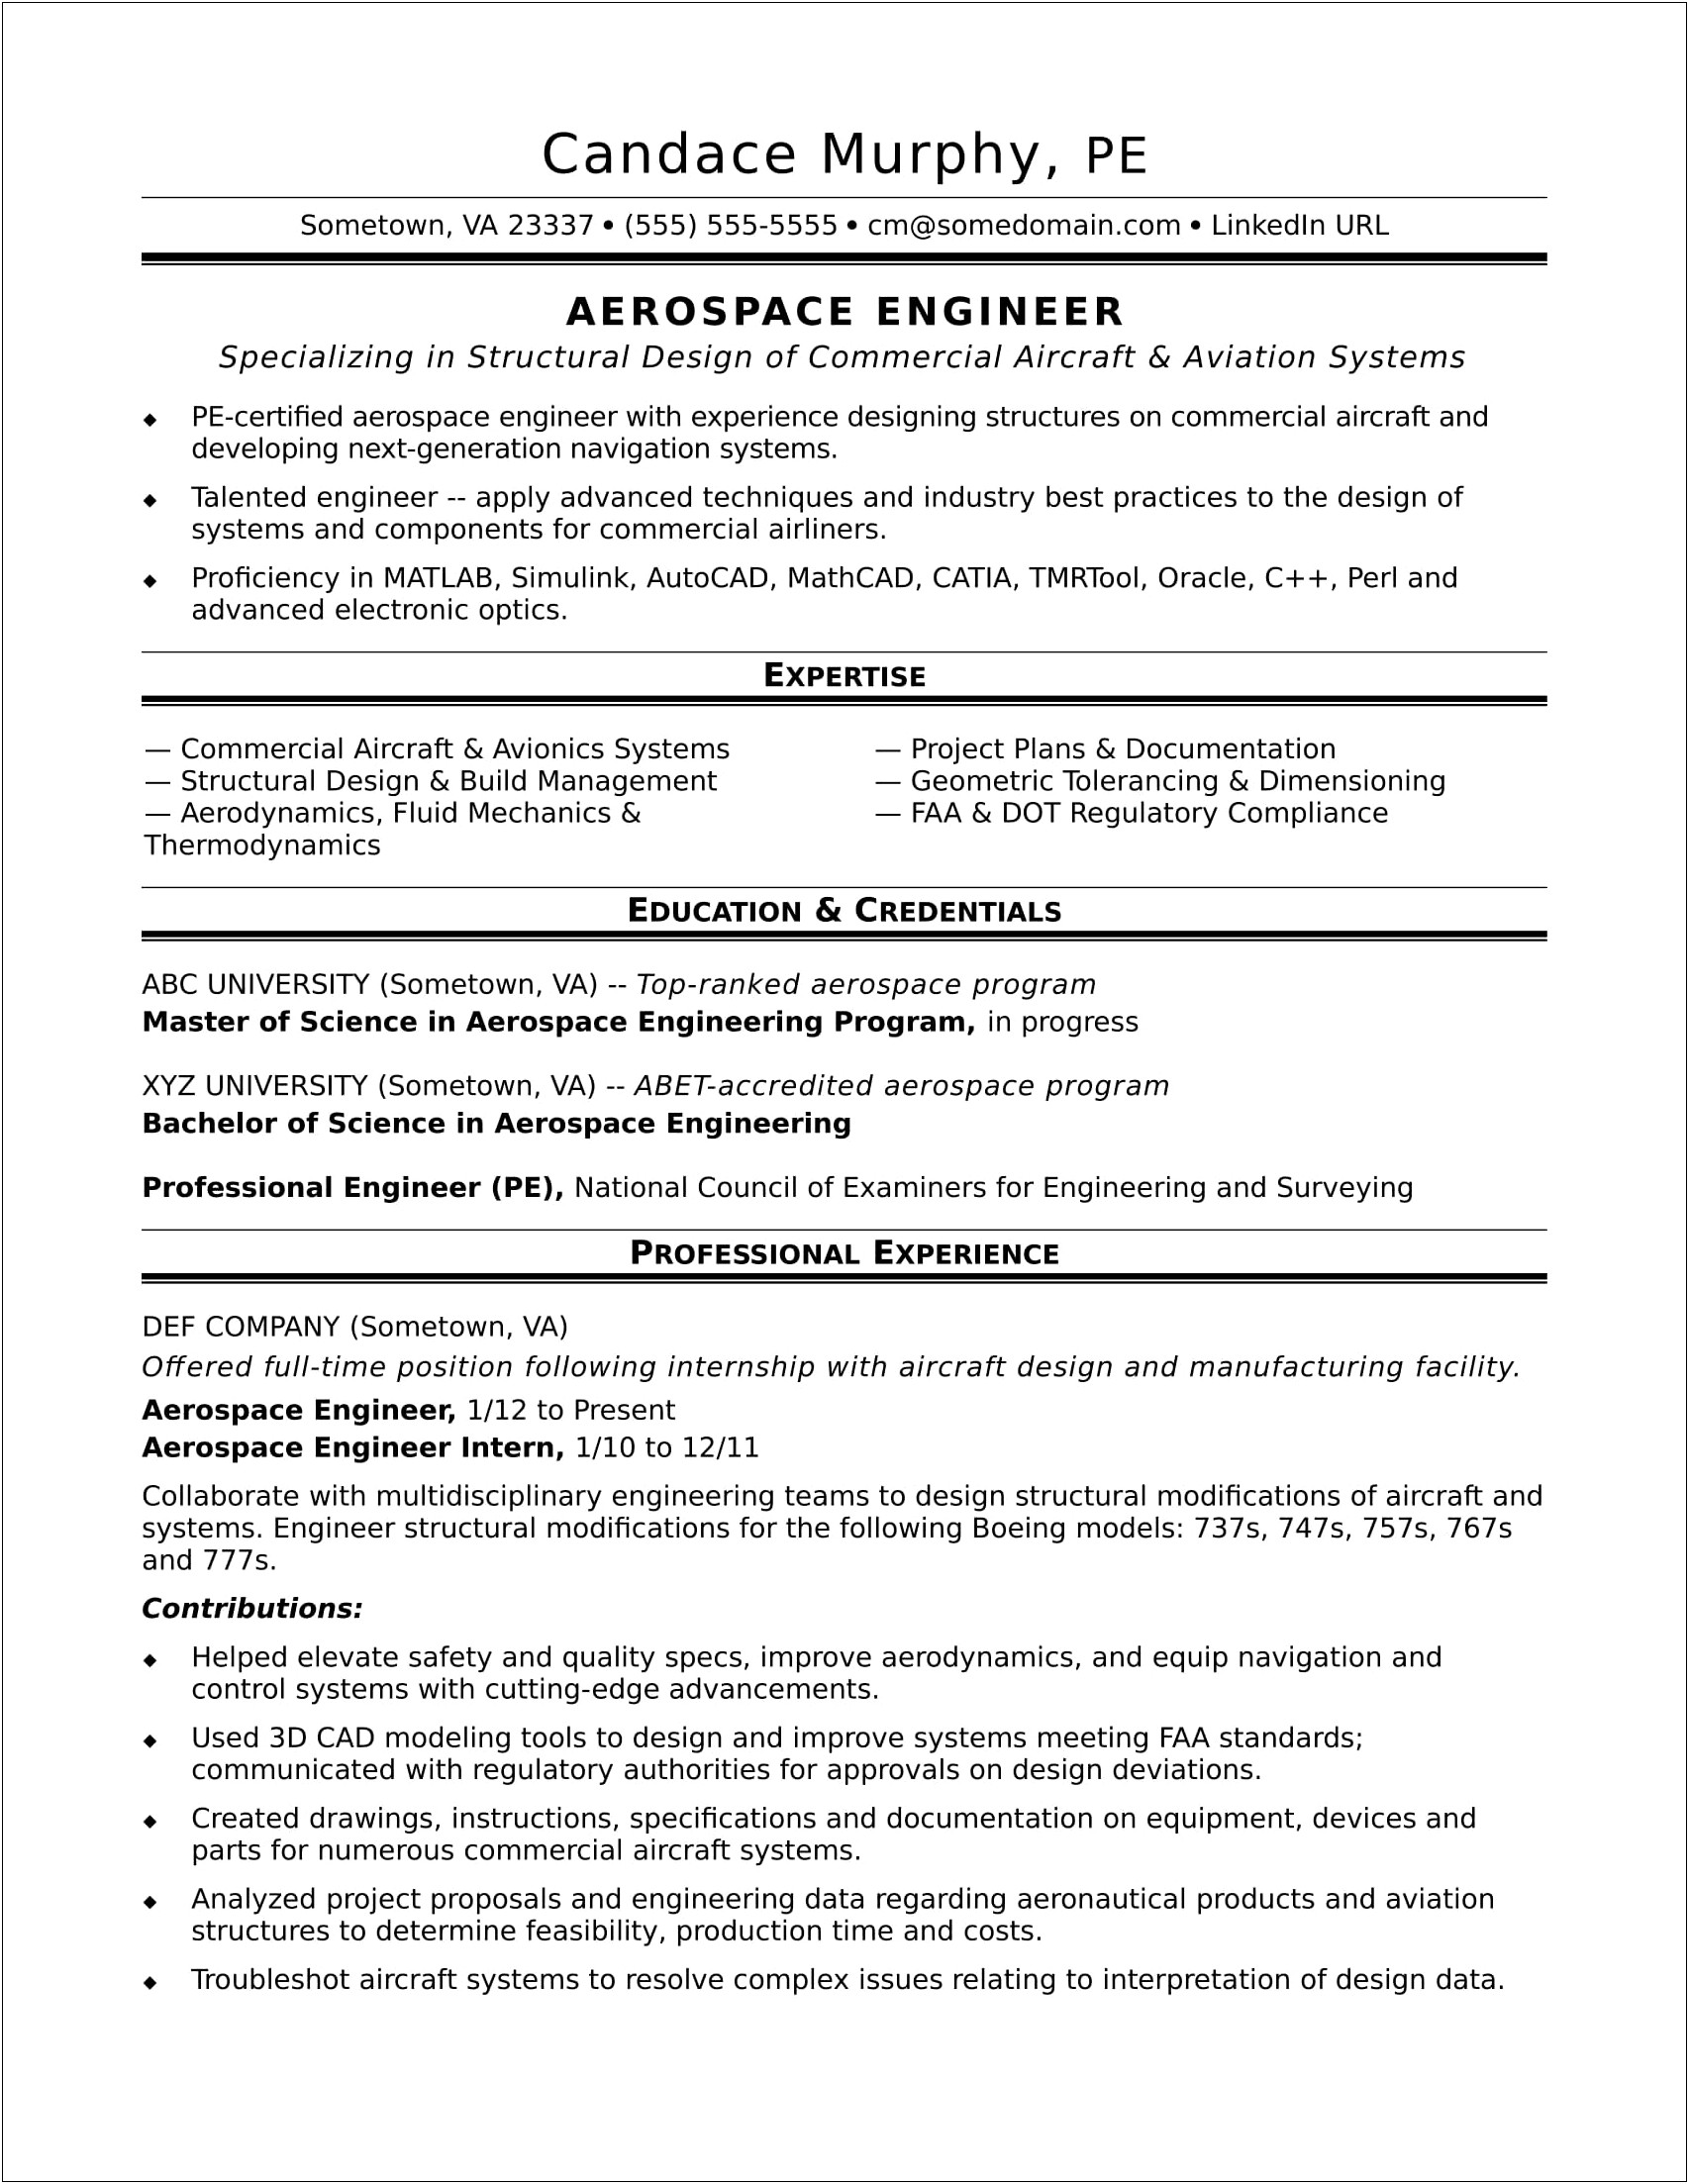 Resume Aerospace Engineering Additional Skills